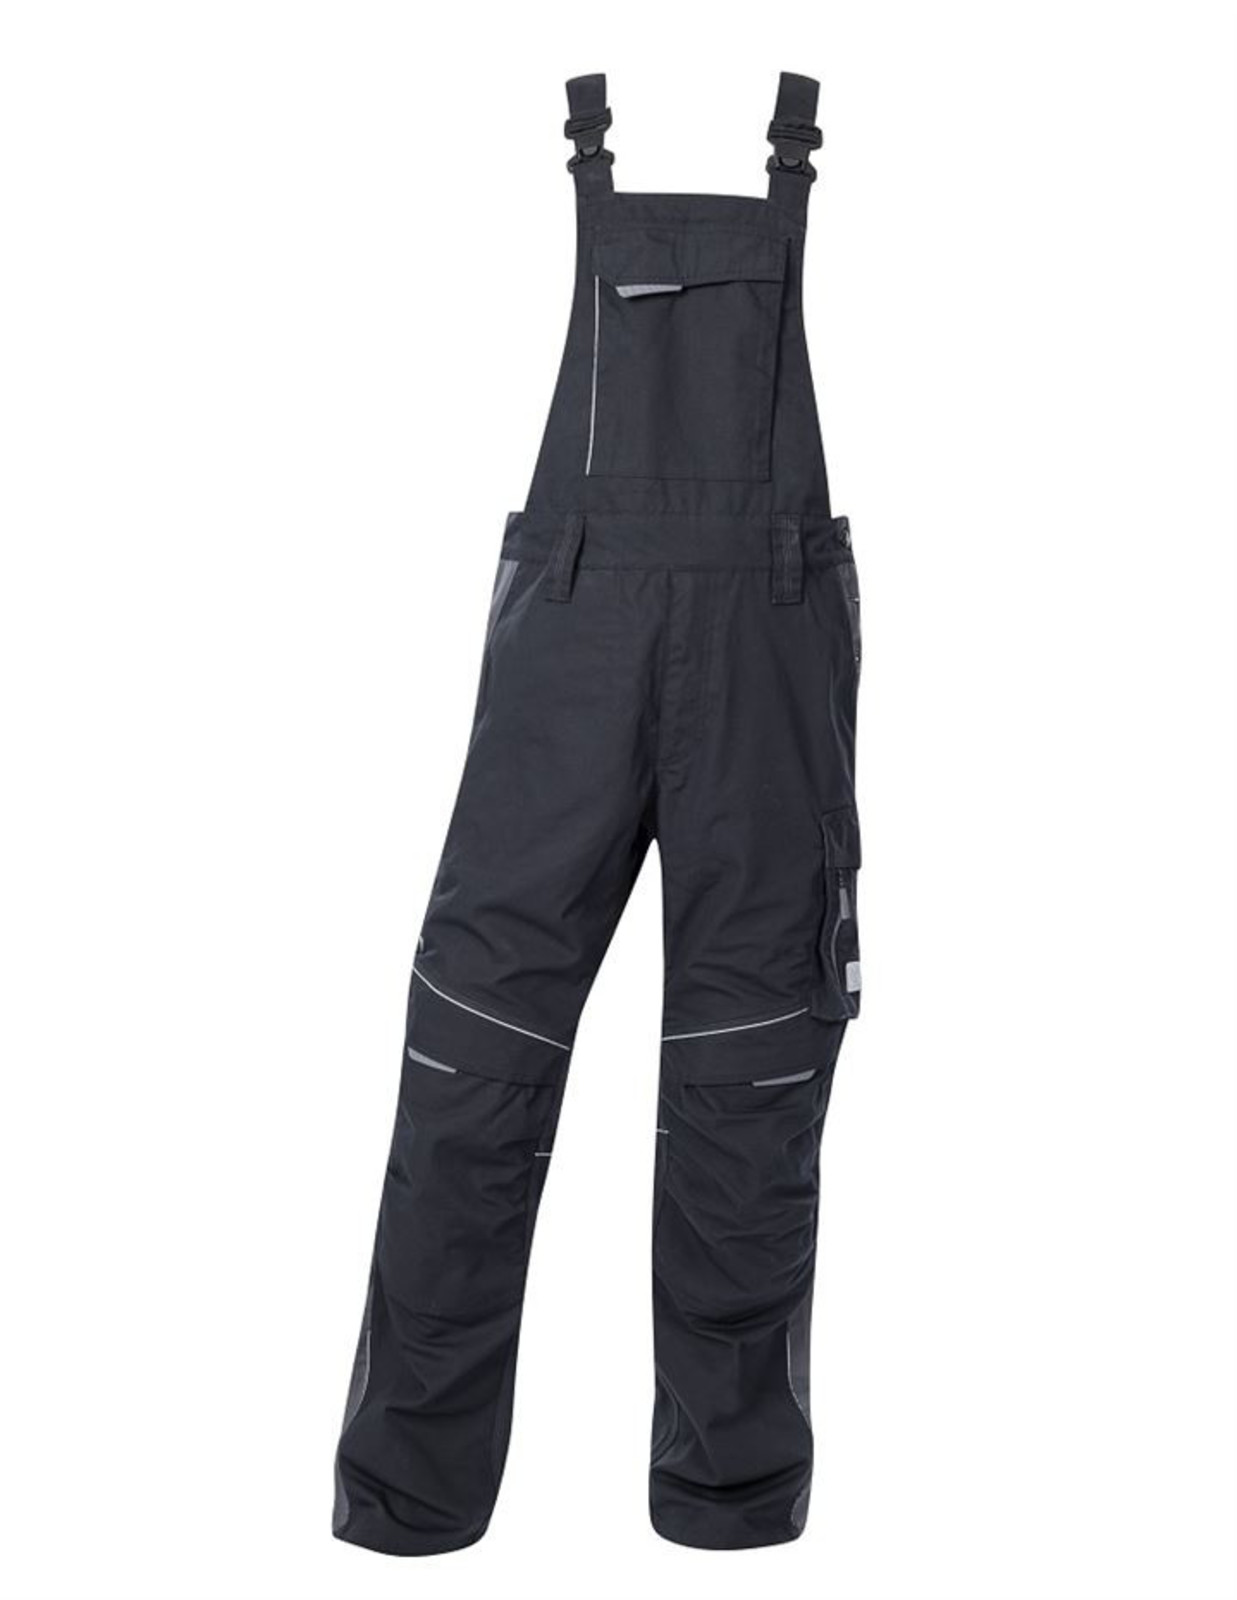 Pracovné nohavice na traky Ardon Urban+ - veľkosť: 54, farba: čierna/sivá